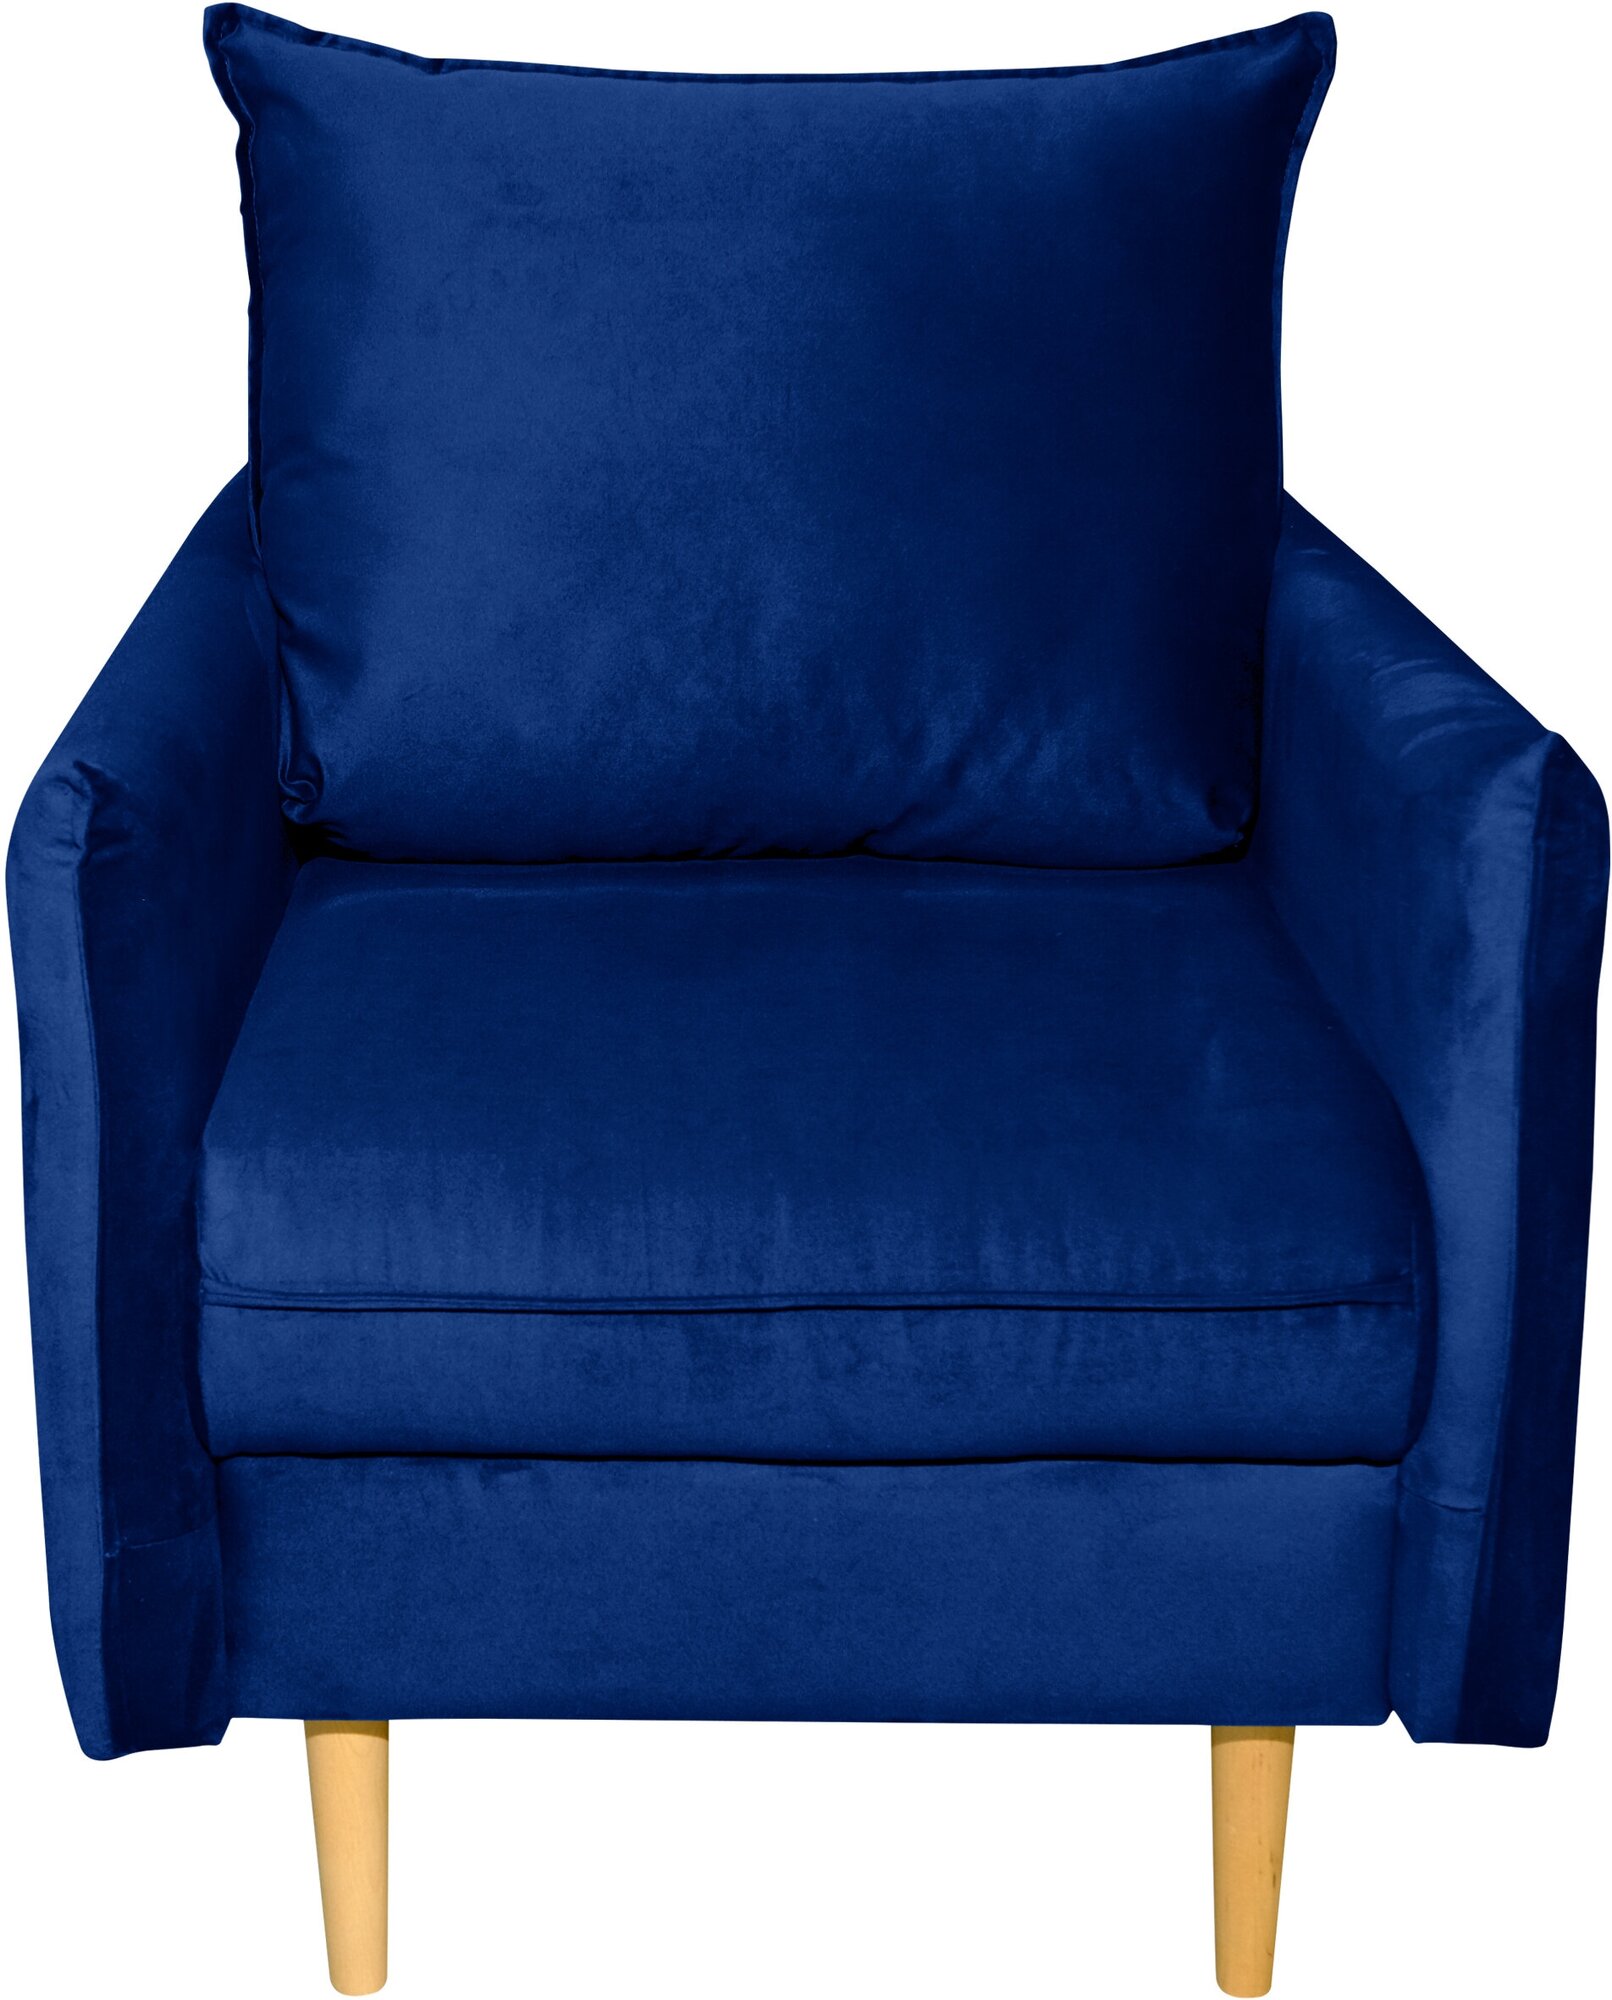 Кресло мягкое с подлокотниками Фьорд синее, 74х98х107 см